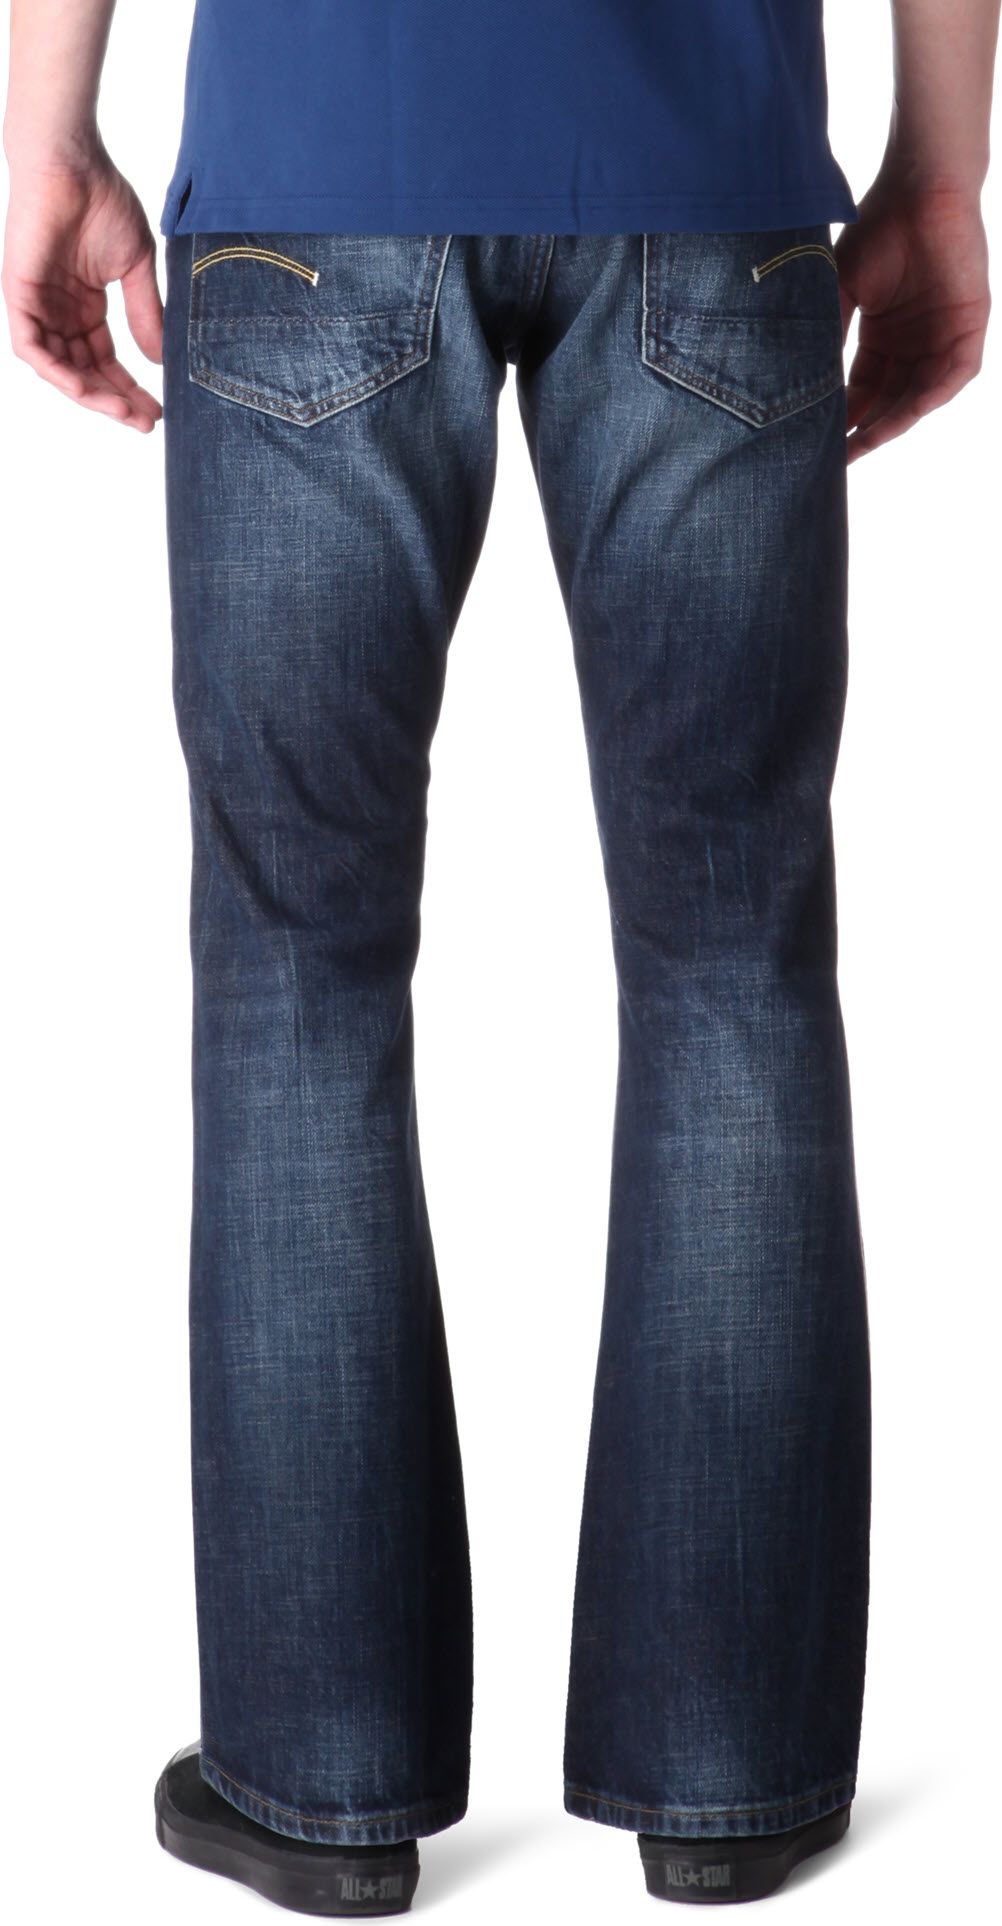 g star bootcut jeans mens, Off 69%, www.davideast.net